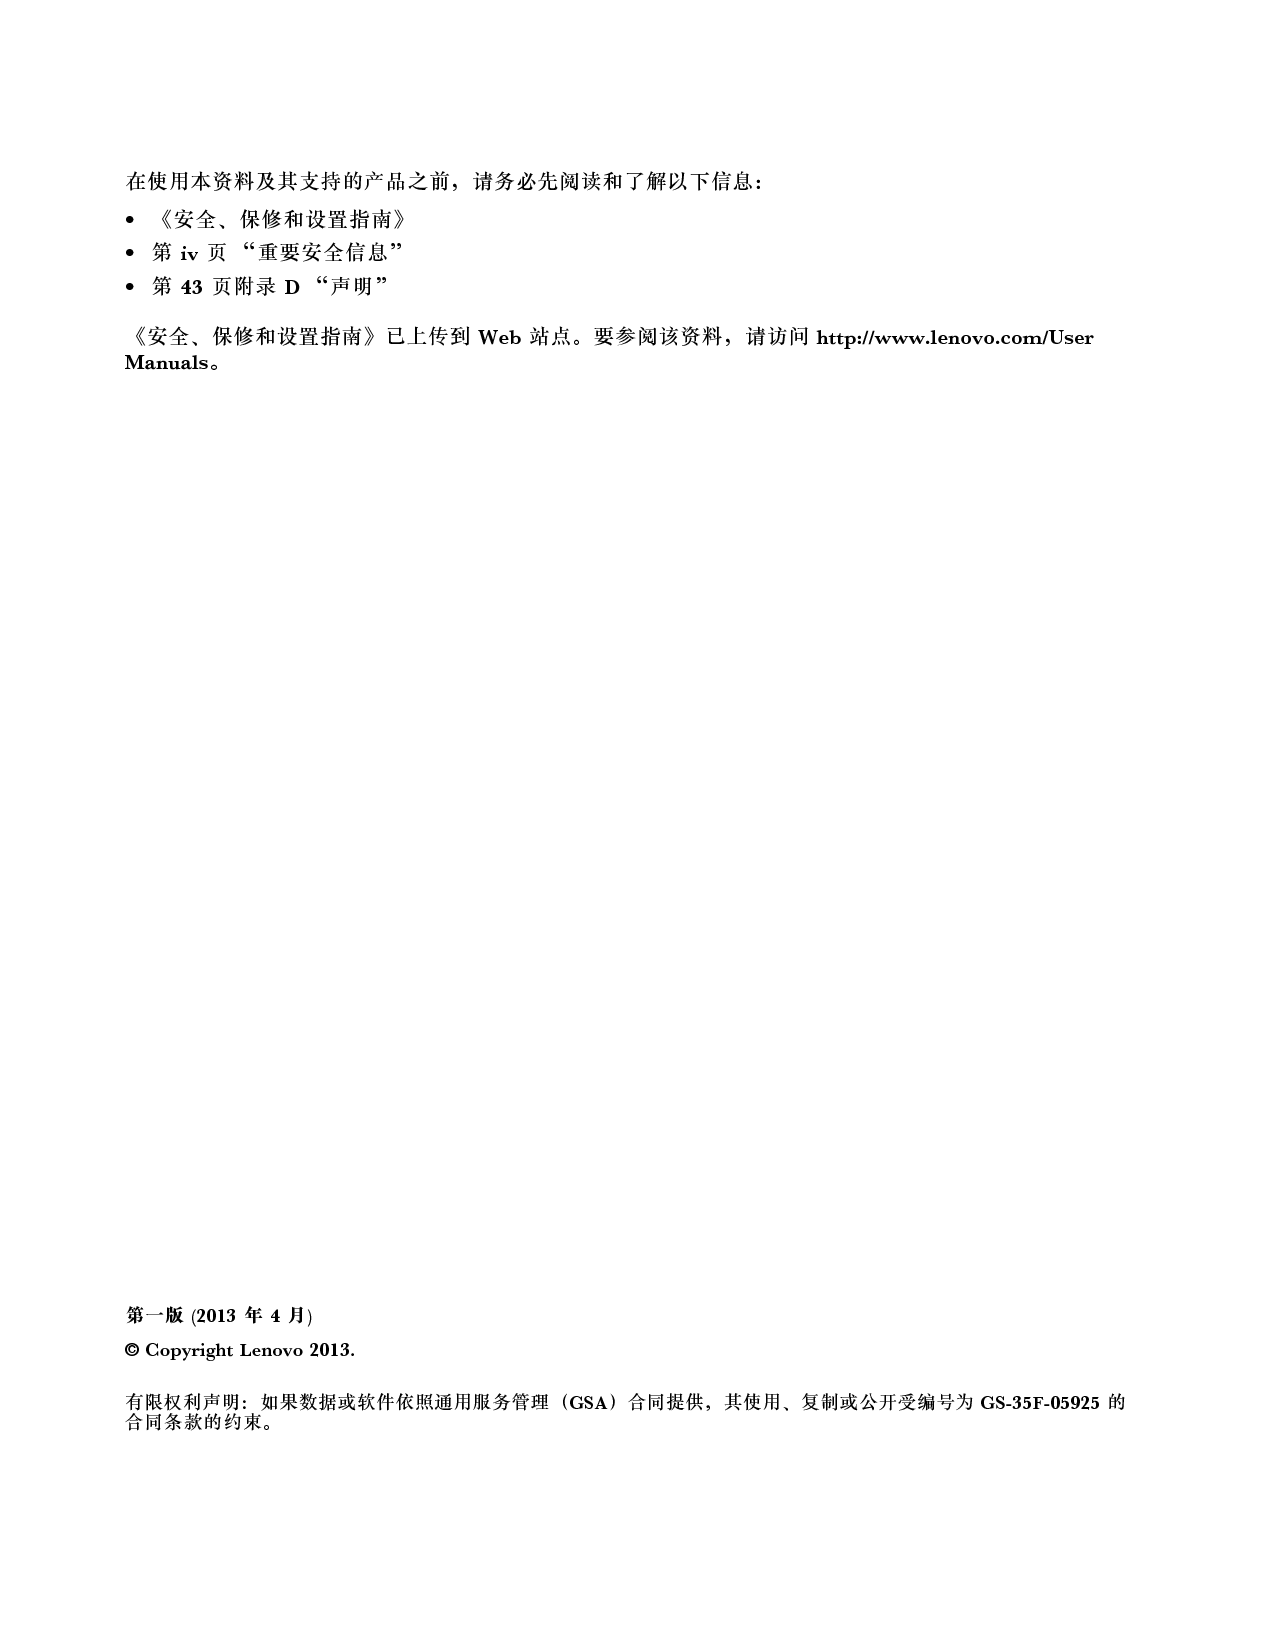 联想 Lenovo 昭阳 K4350 用户指南 第1页